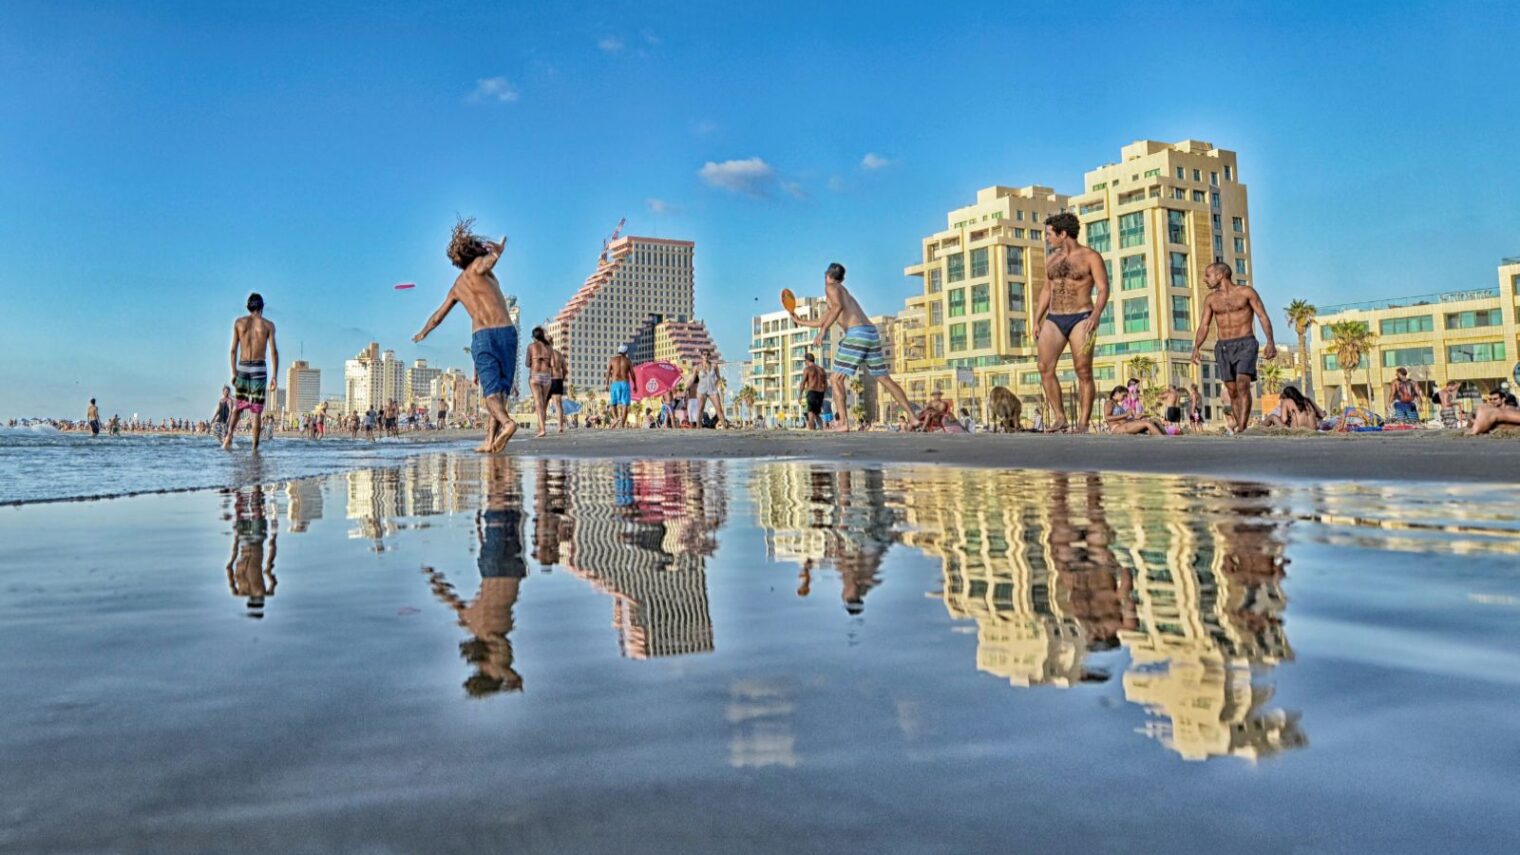 Tel Aviv beach scene by Amir Chodorov